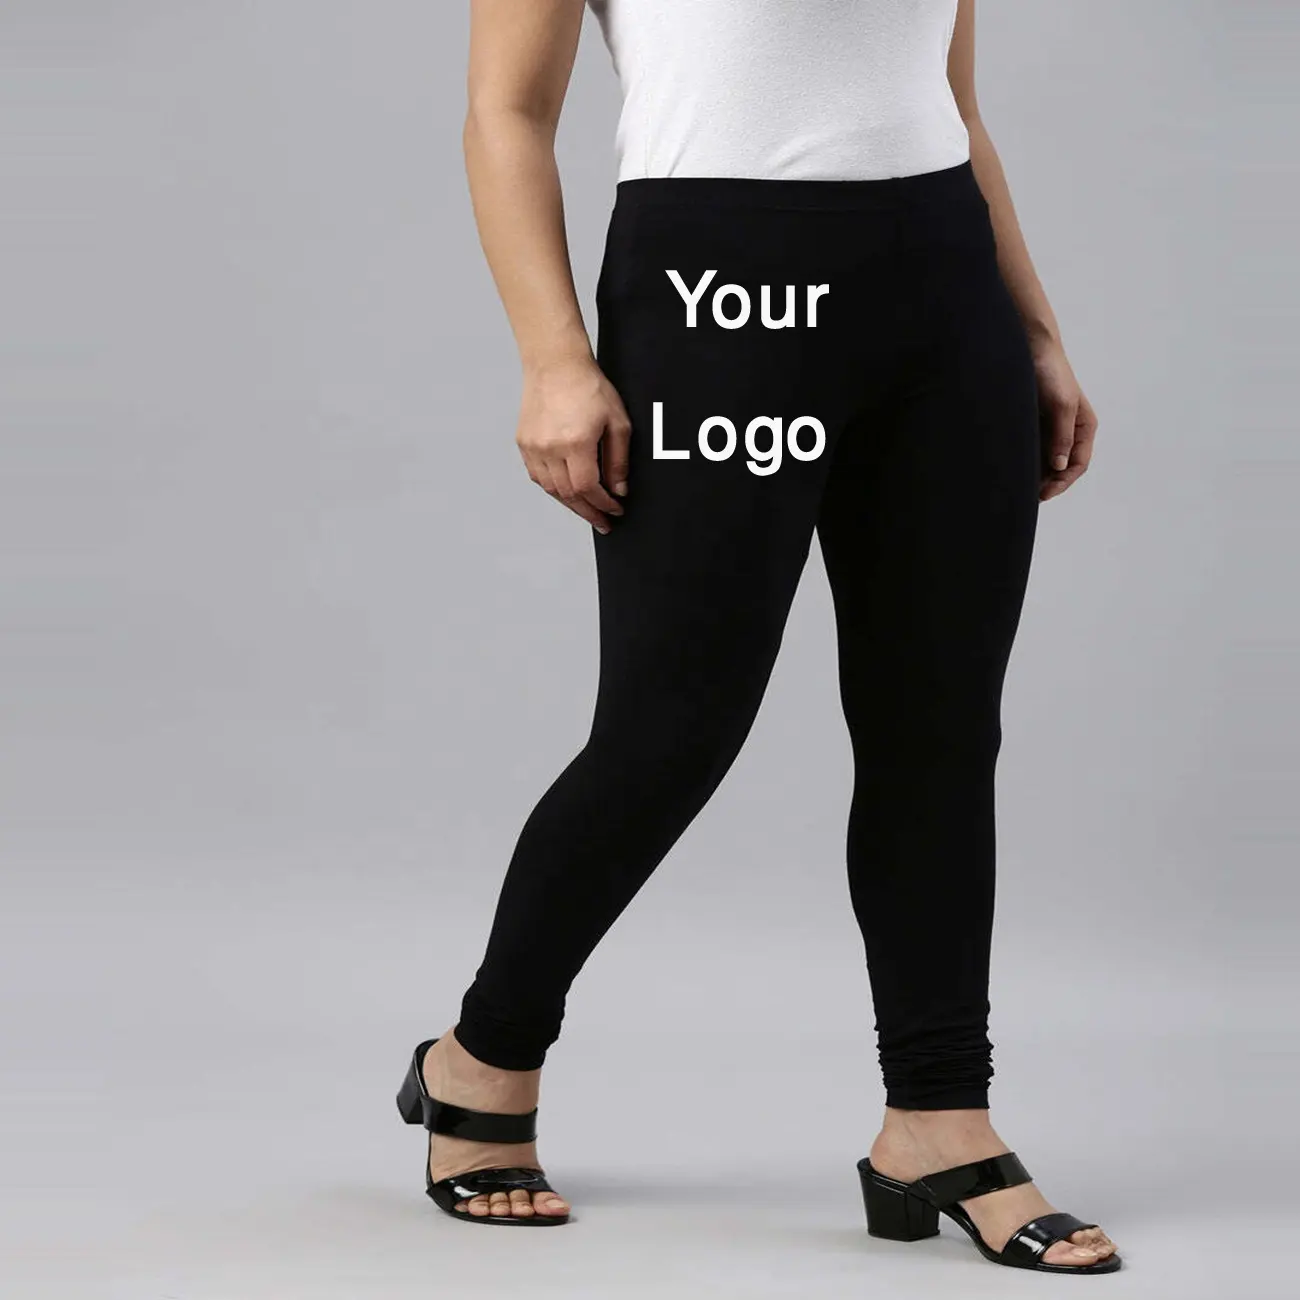 100% Alta Qualidade E Preço Barato Design exclusivo Personalizado design personalizado Impresso Bordado Leggings Para As Mulheres De Bangladesh